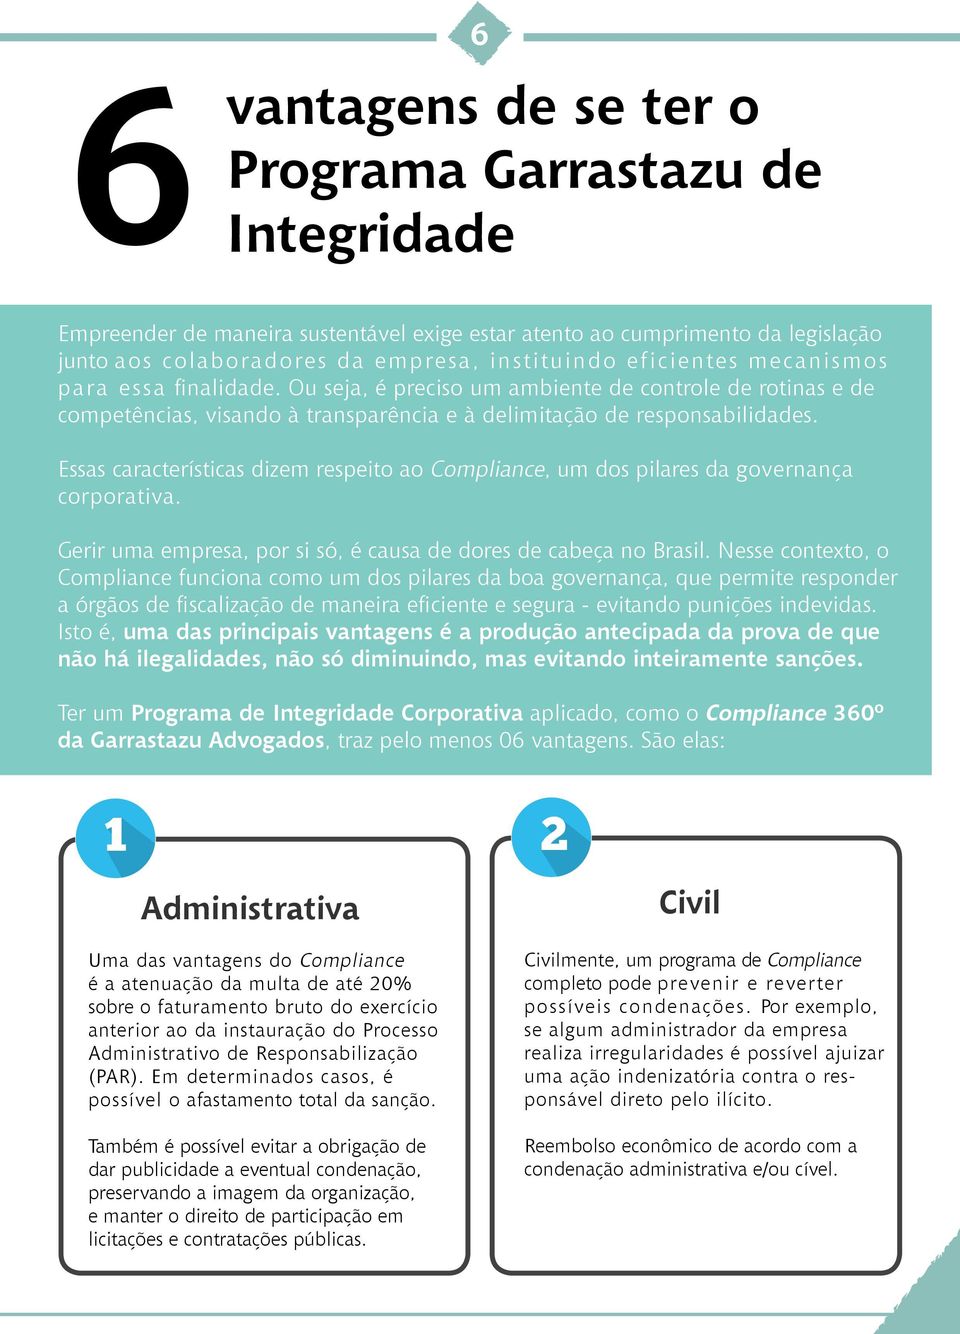 Essas características dizem respeito ao Compliance, um dos pilares da governança corporativa. Gerir uma empresa, por si só, é causa de dores de cabeça no Brasil.